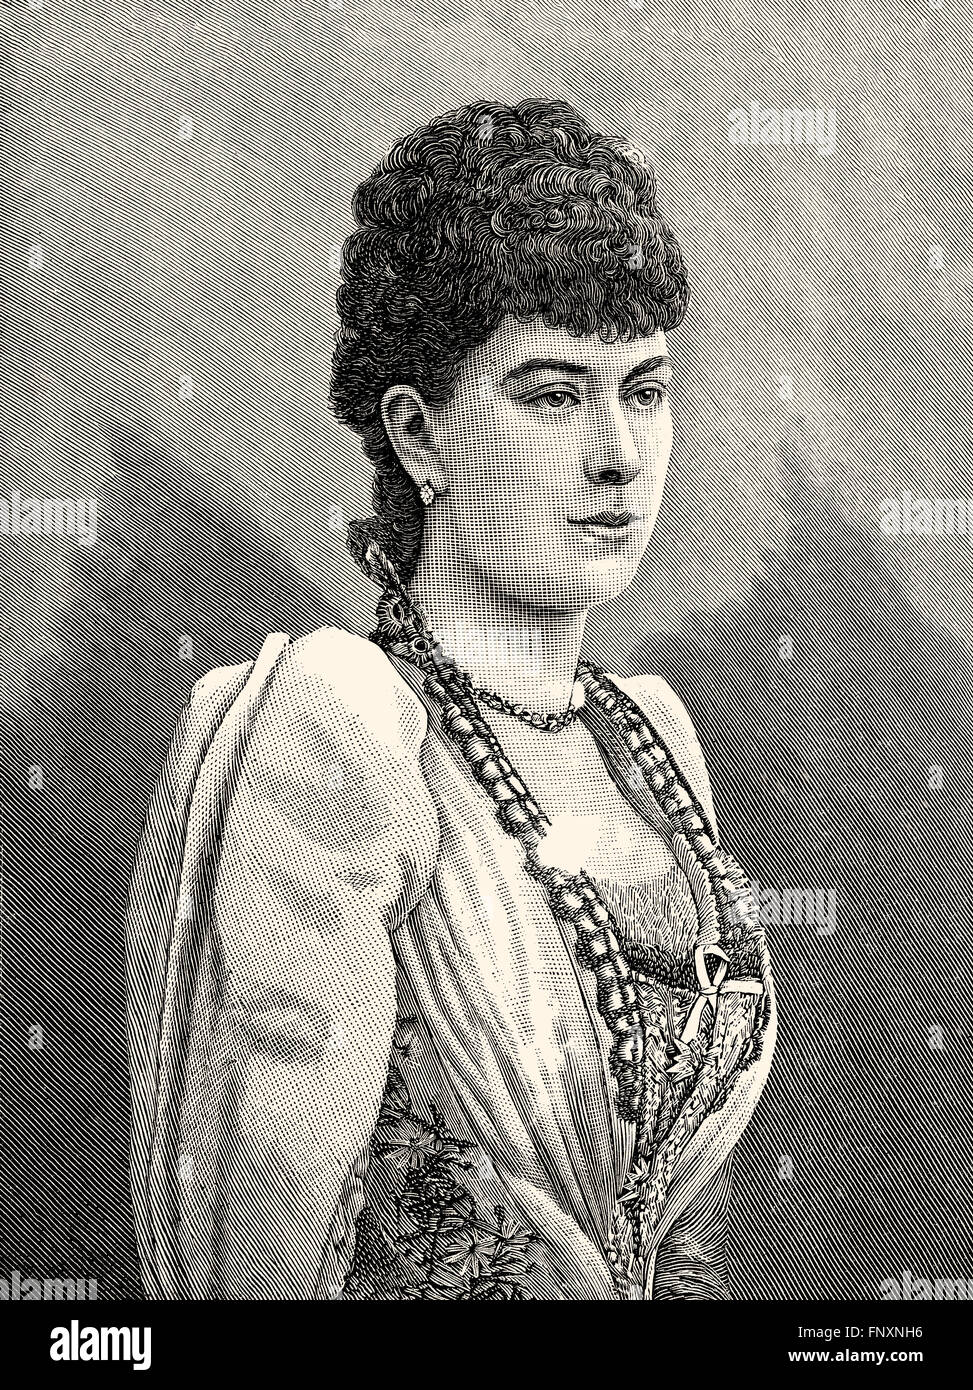 Maria di Teck, 1867-1953, regina consorte del Regno Unito e Imperatrice consorte di India, come la moglie di King-Emperor George V. Foto Stock